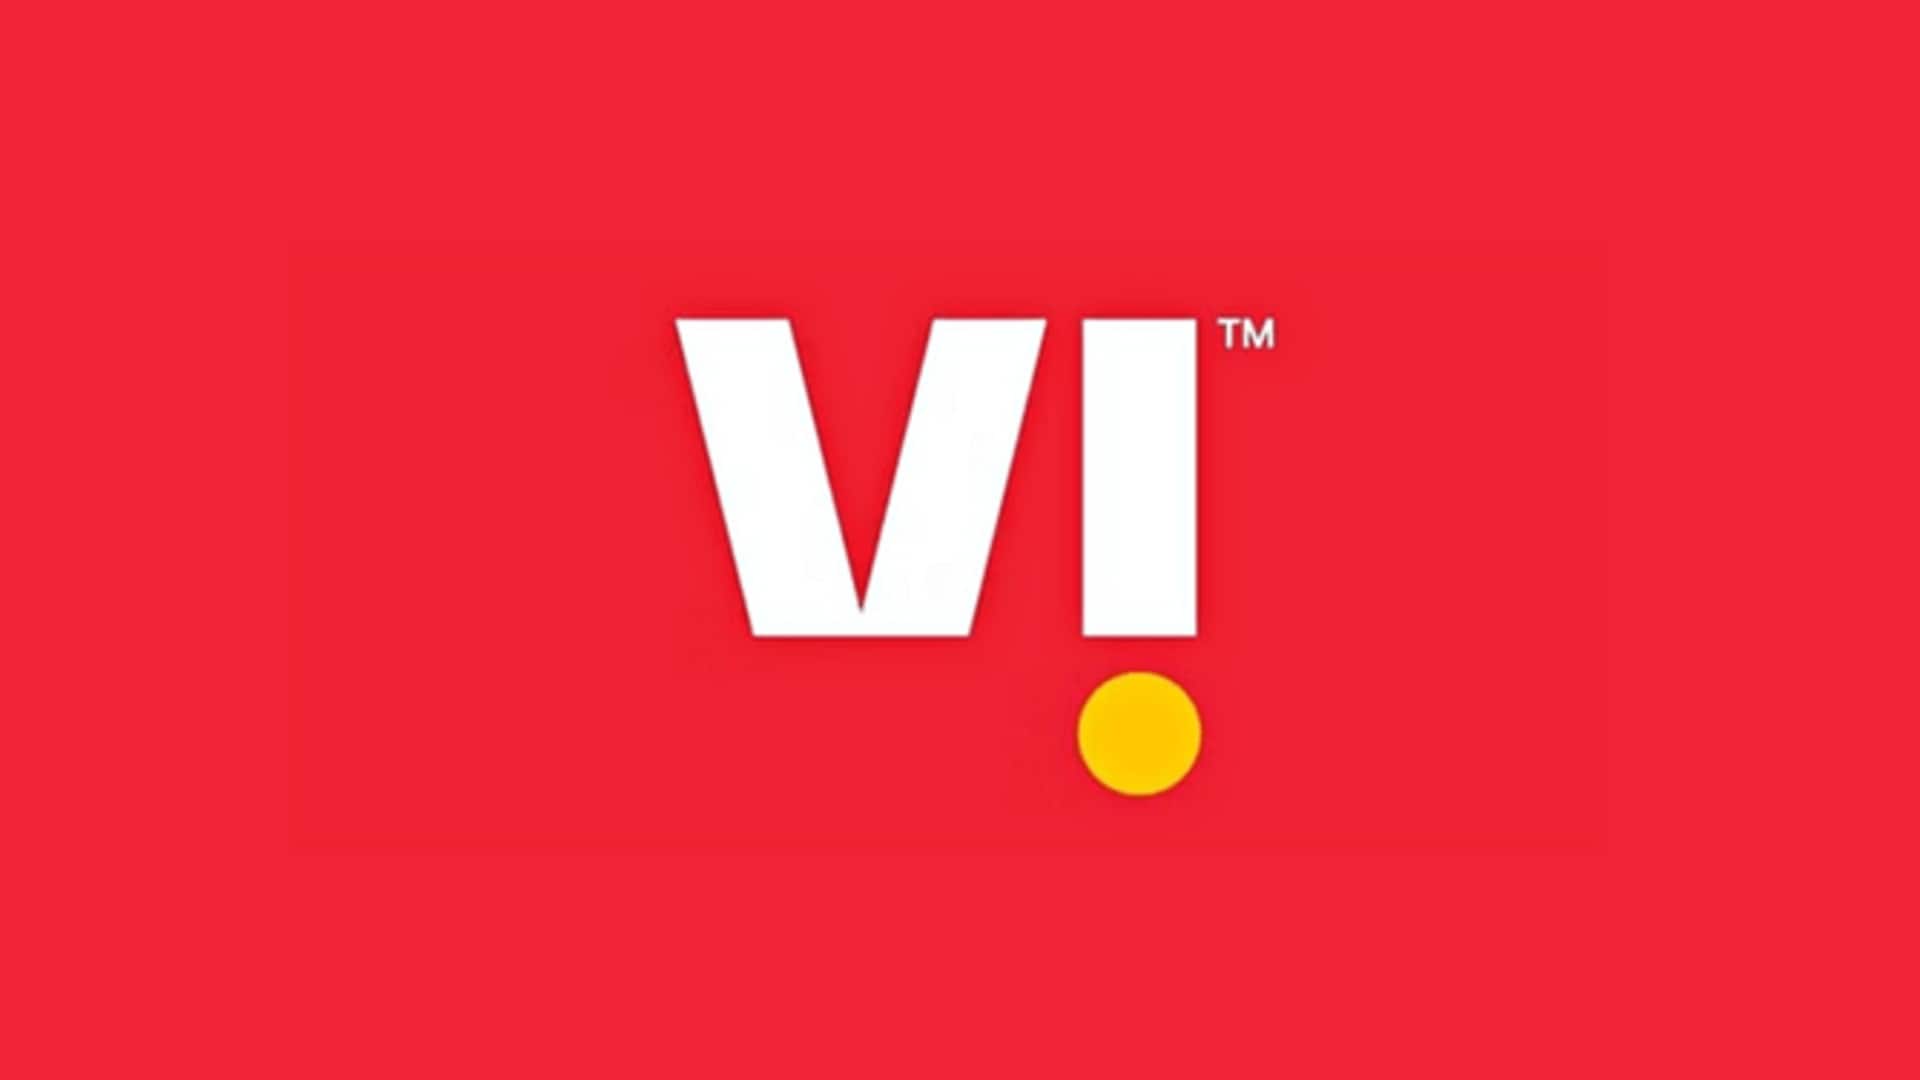 Vi ने की स्वतंत्रता दिवस ऑफर की घोषणा, पाएं 50GB अतिरिक्त डाटा और अन्य लाभ